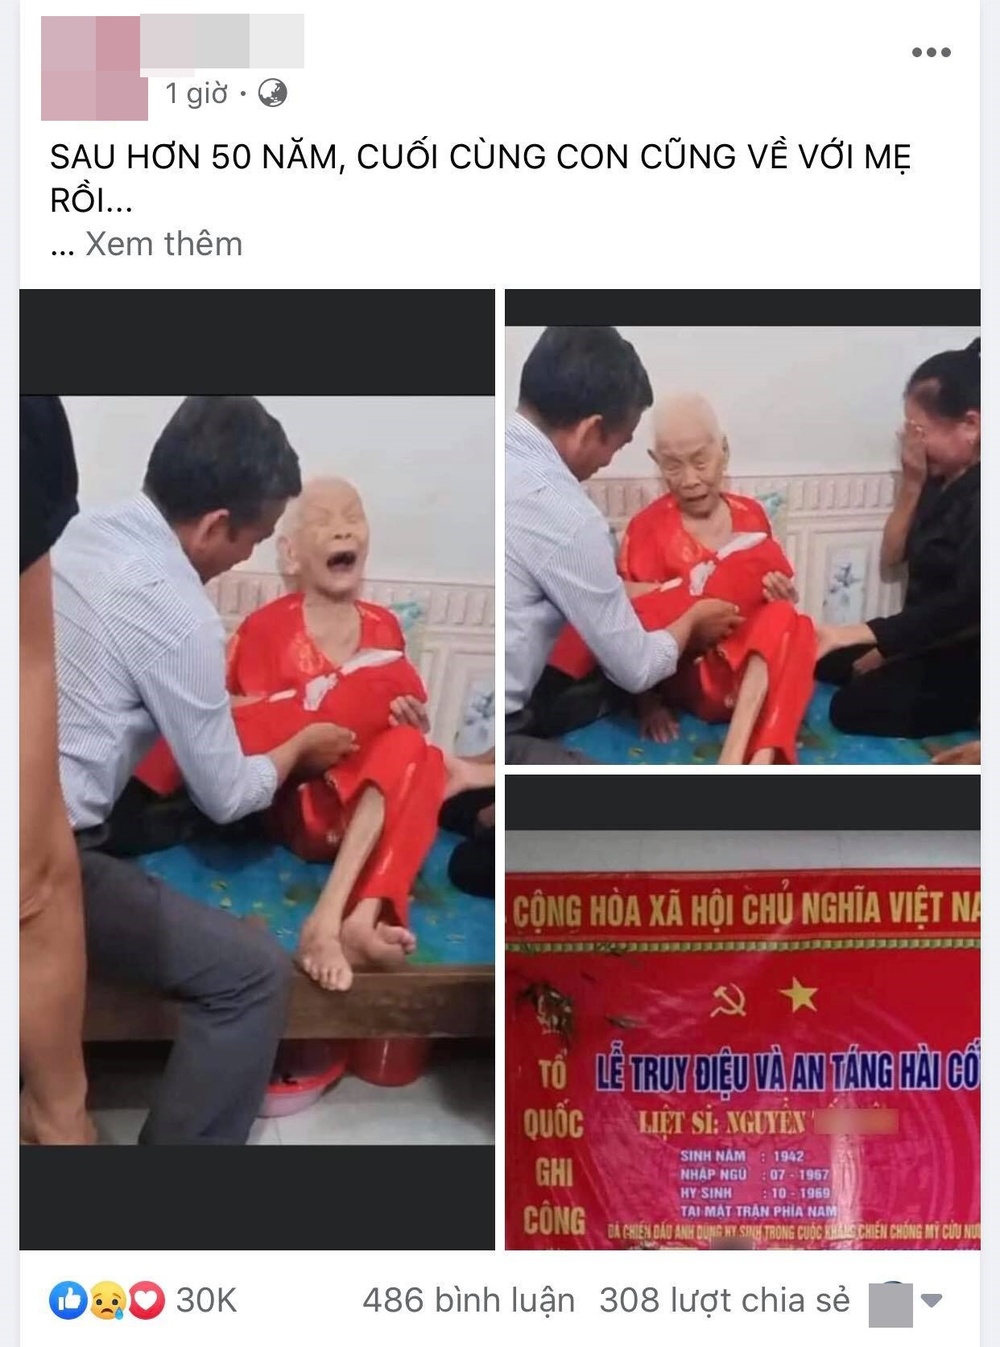 Mẹ Việt Nam anh hùng bật khóc đón con trai liệt sĩ về sau hơn 50 năm